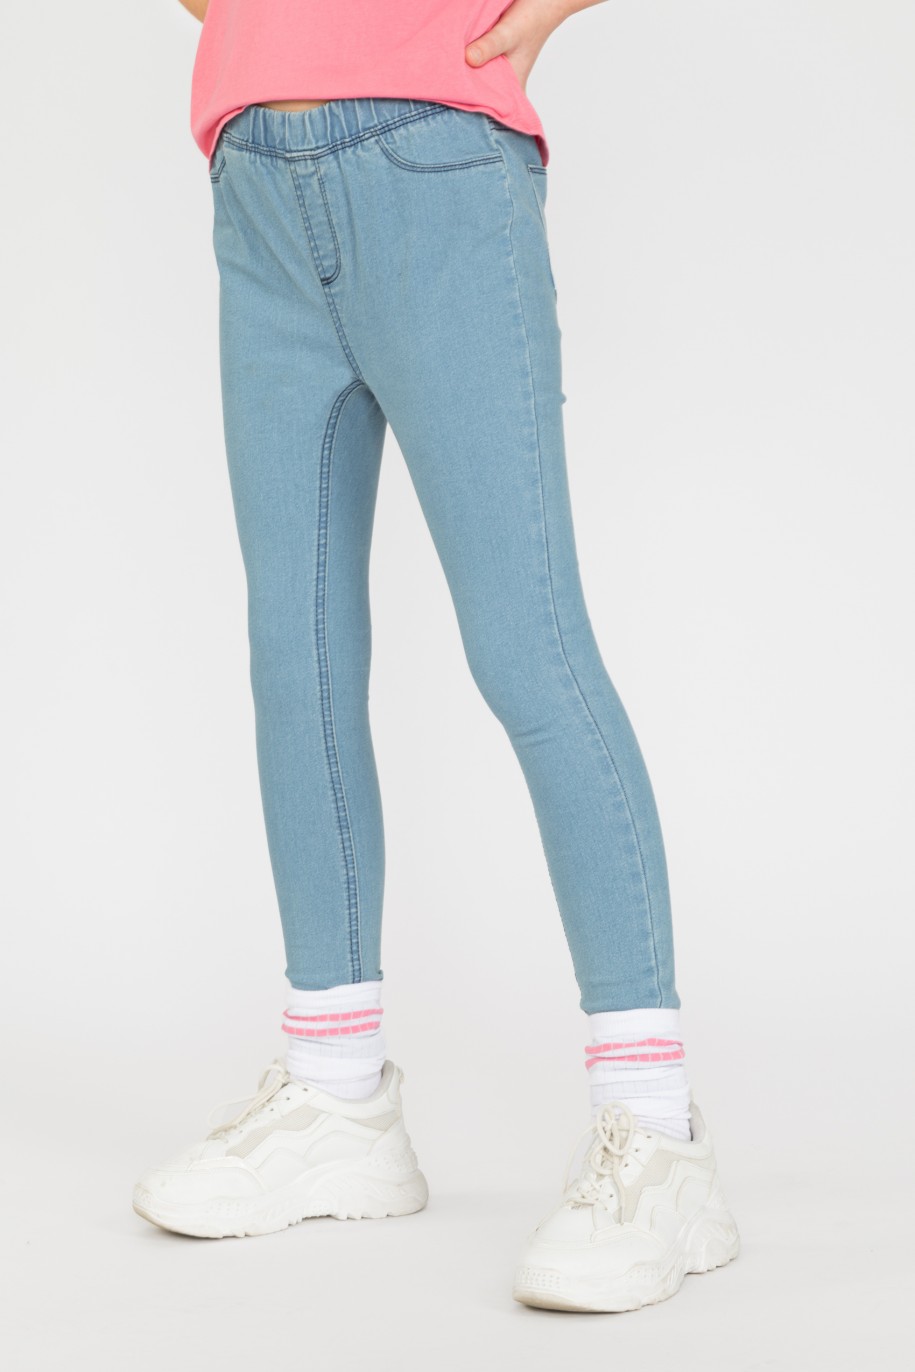 Niebieskie spodnie jegginsy dla dziewczyny - 33116